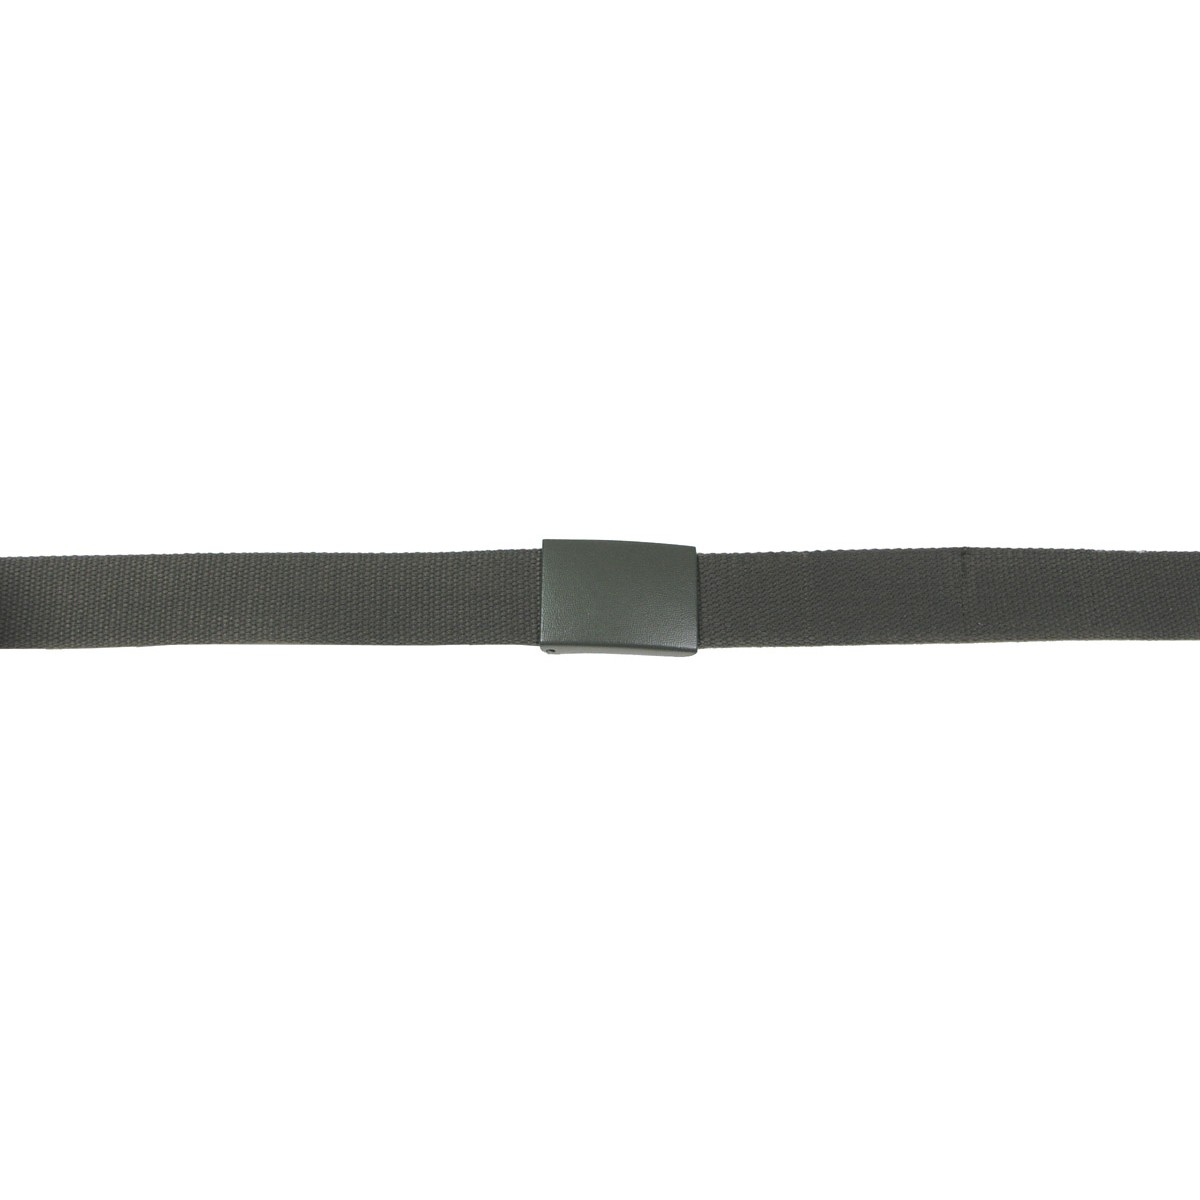 Opasek kalhotový MFH BW šířka 3 cm - olivový, 130